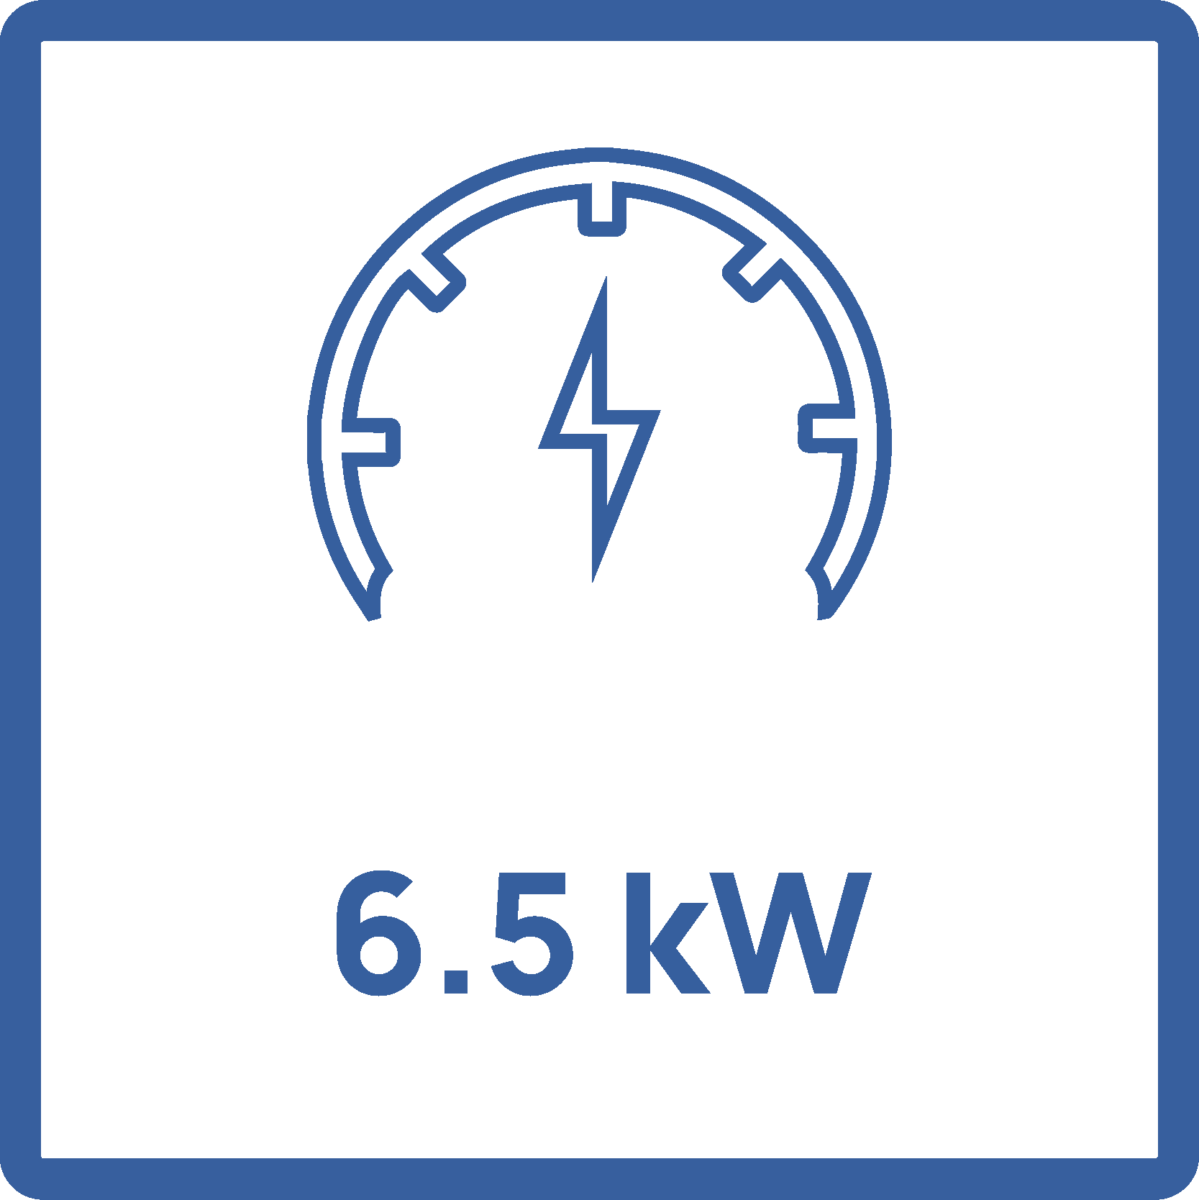 6.5 kW